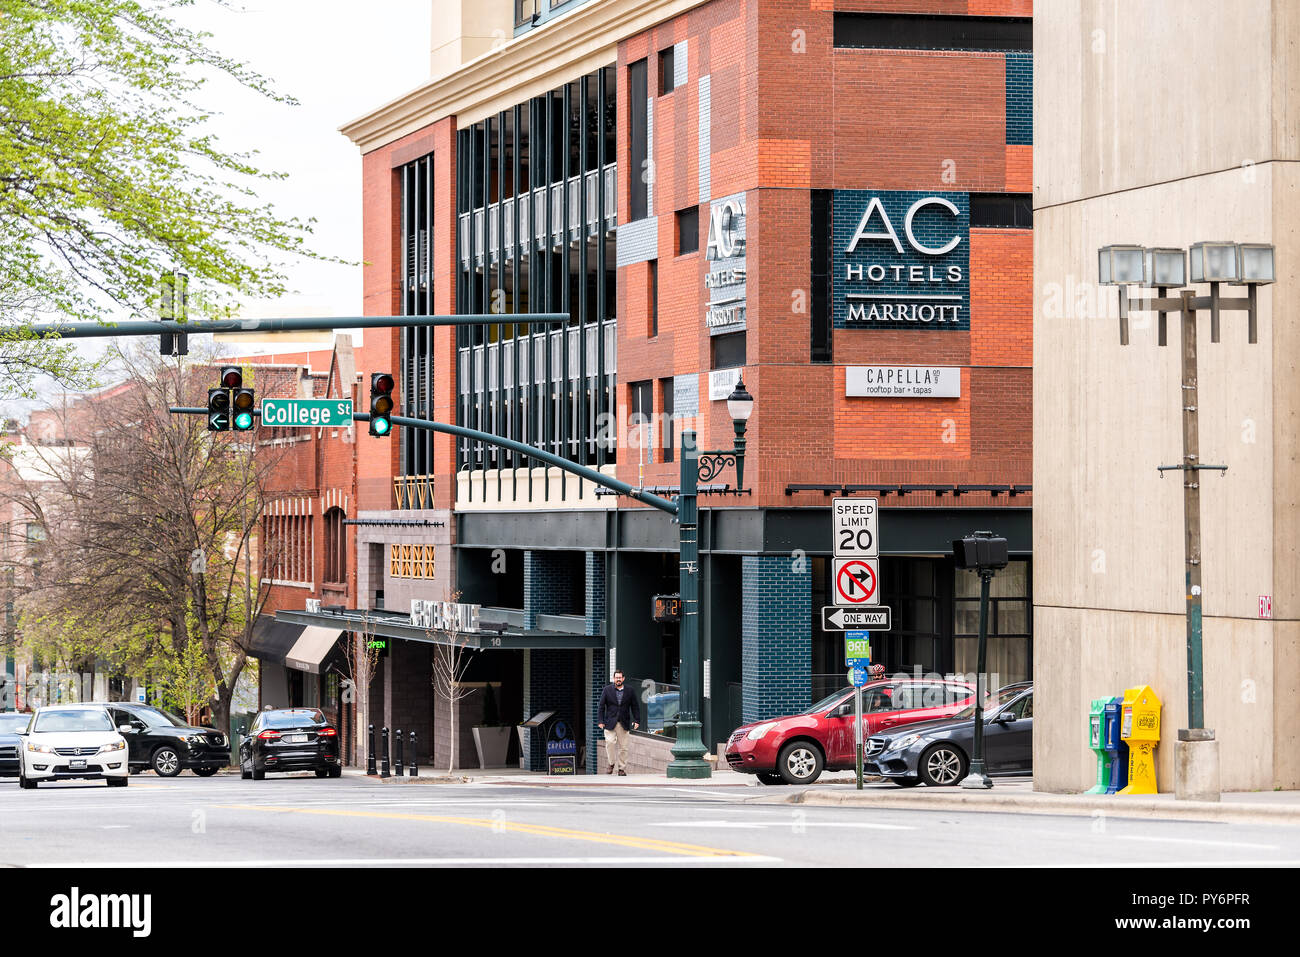 Asheville, Stati Uniti d'America - 19 Aprile 2018: il centro città vecchia College street in North Carolina NC famosa città con magazzini, negozi, segno per AC Marriott hote Foto Stock